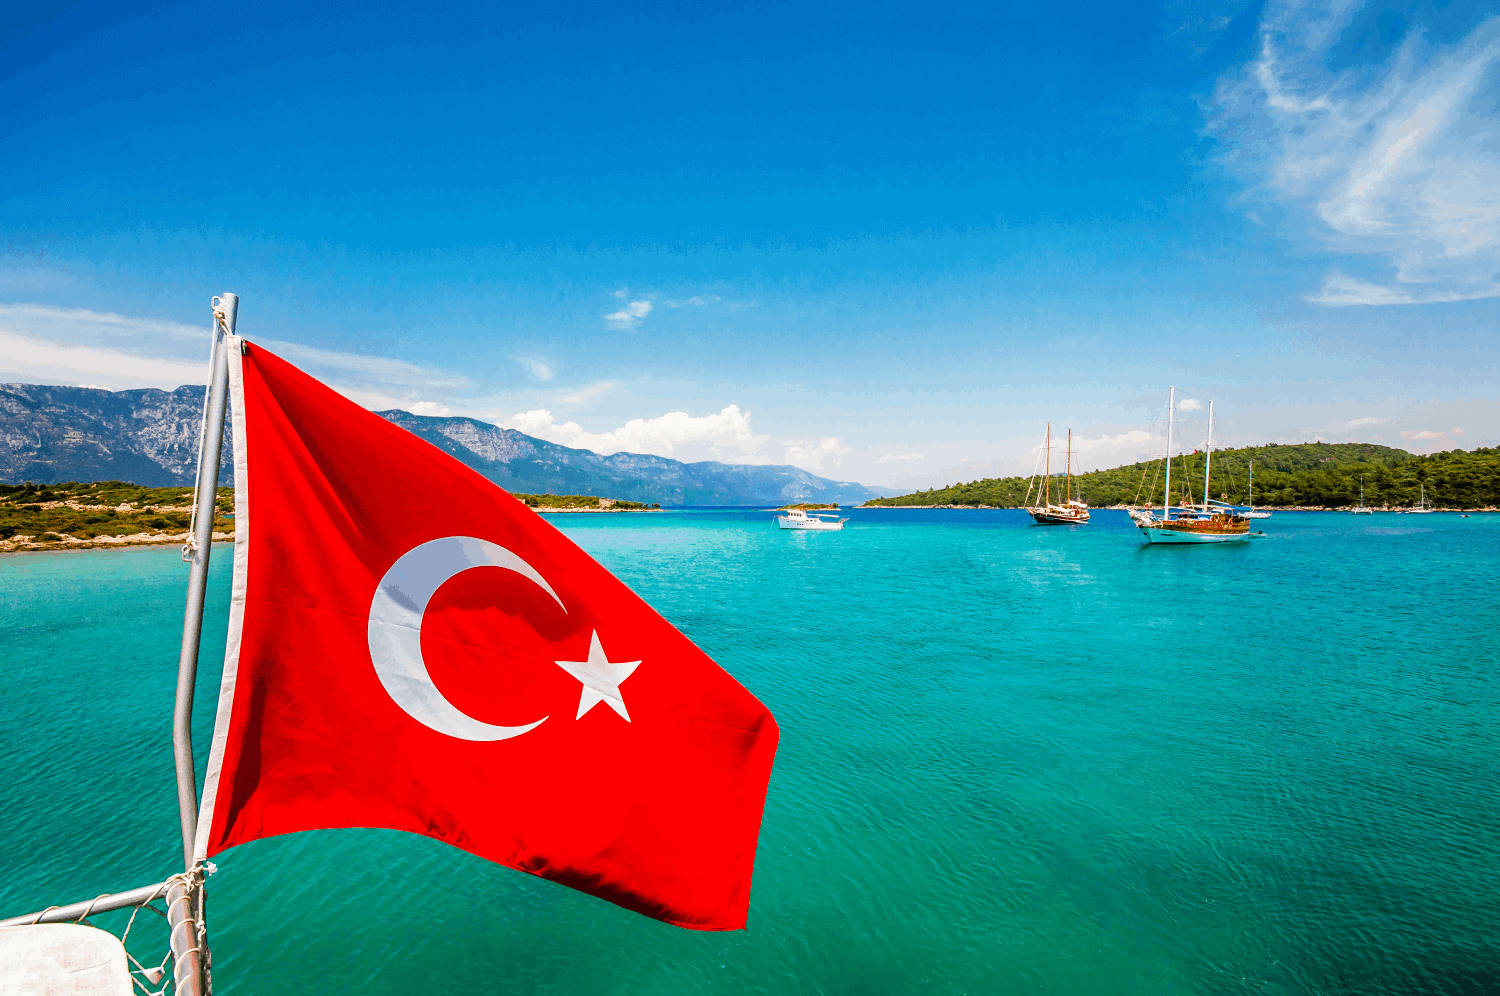 Turecká vlajka (červená s bílou hvězdou a půlměsícem) vlající před mořskou hladinou.